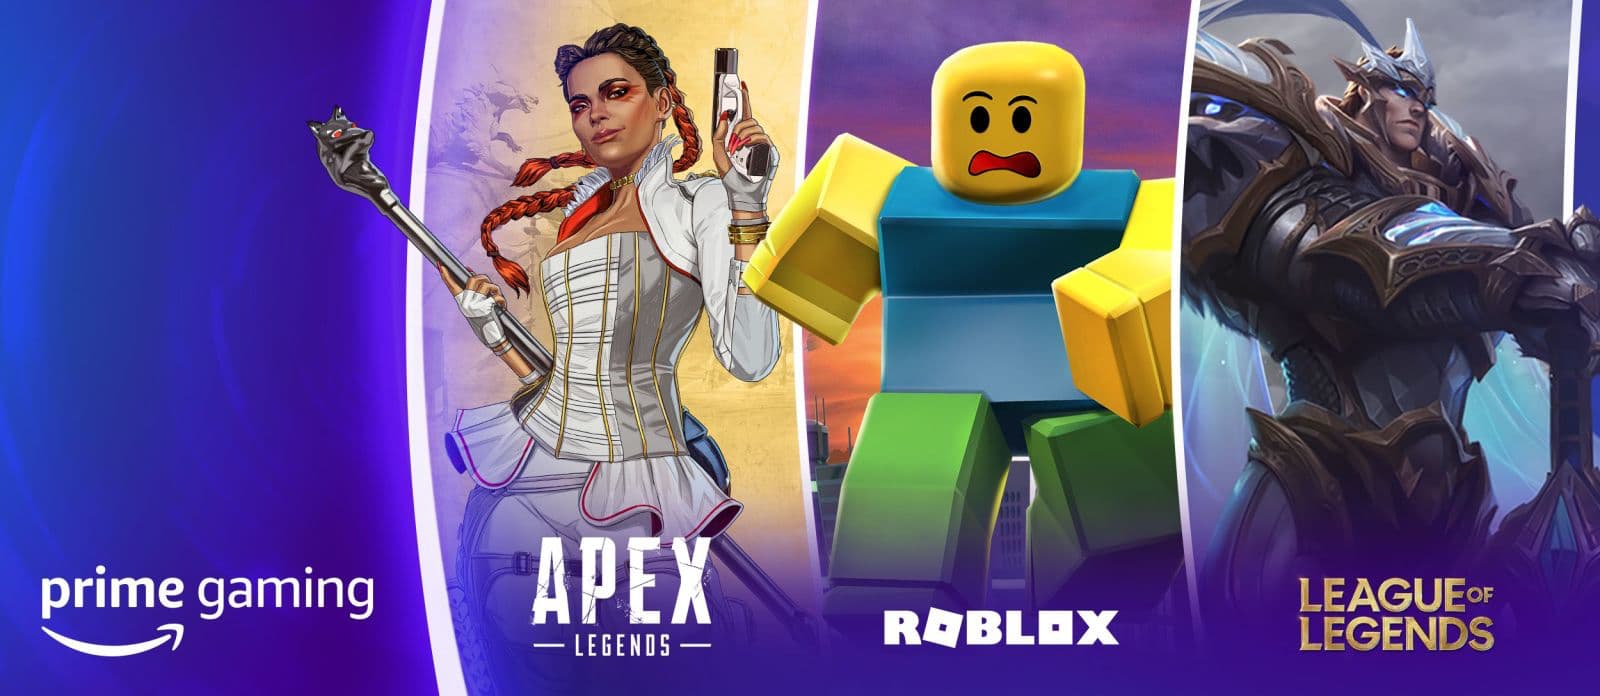 Imagem promocional do Prime Gaming com ilustrações dos jogos Apex Legends, Roblox e League of Legends